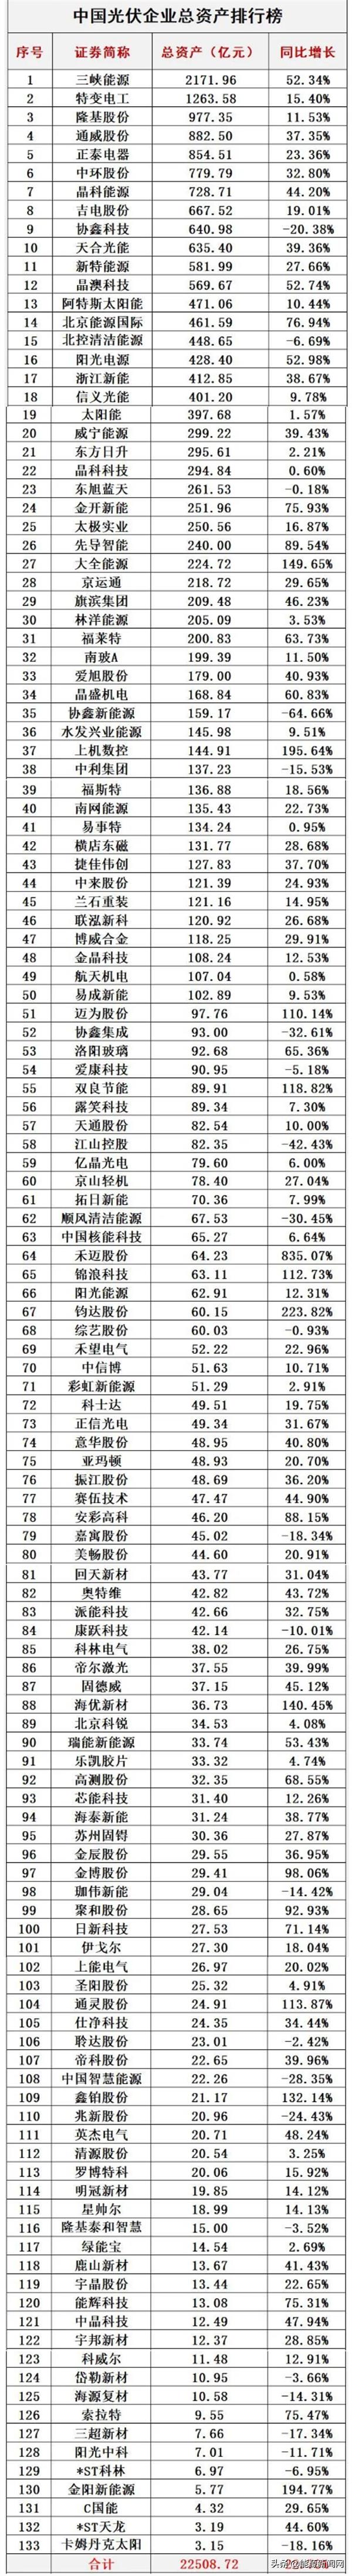 中国光伏排名(中国光伏企业排名前十)